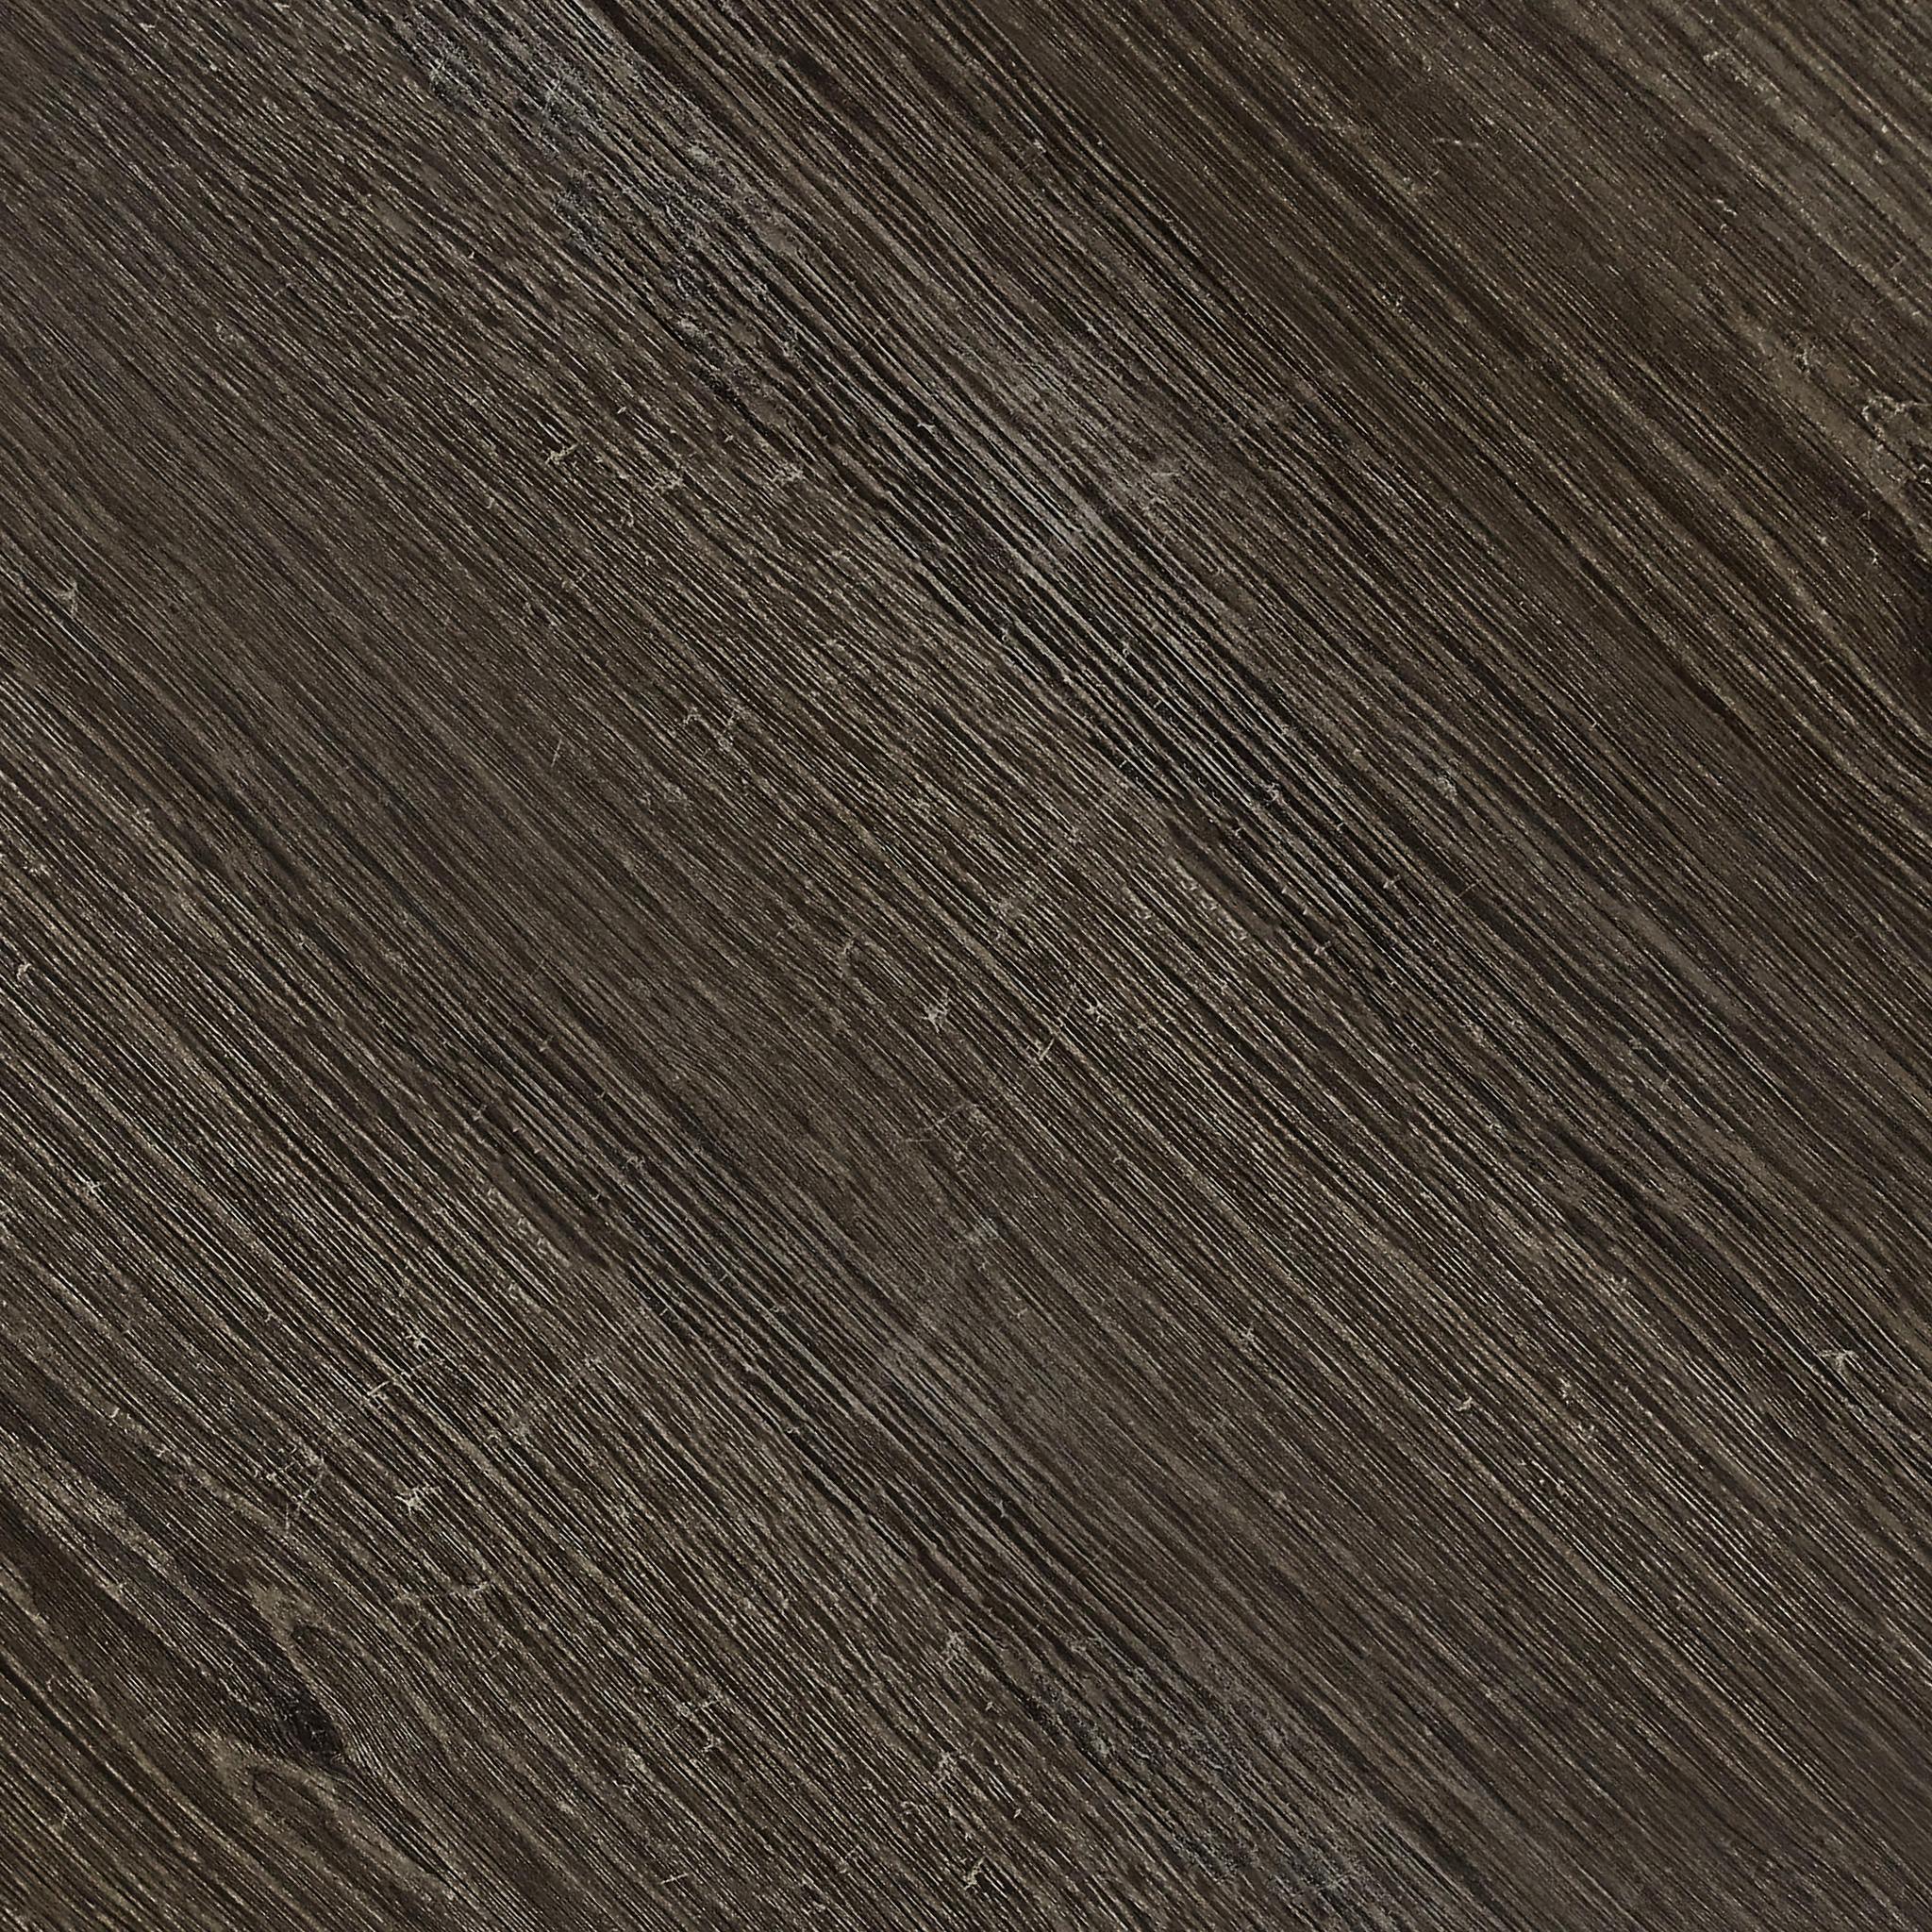 dark oak texture